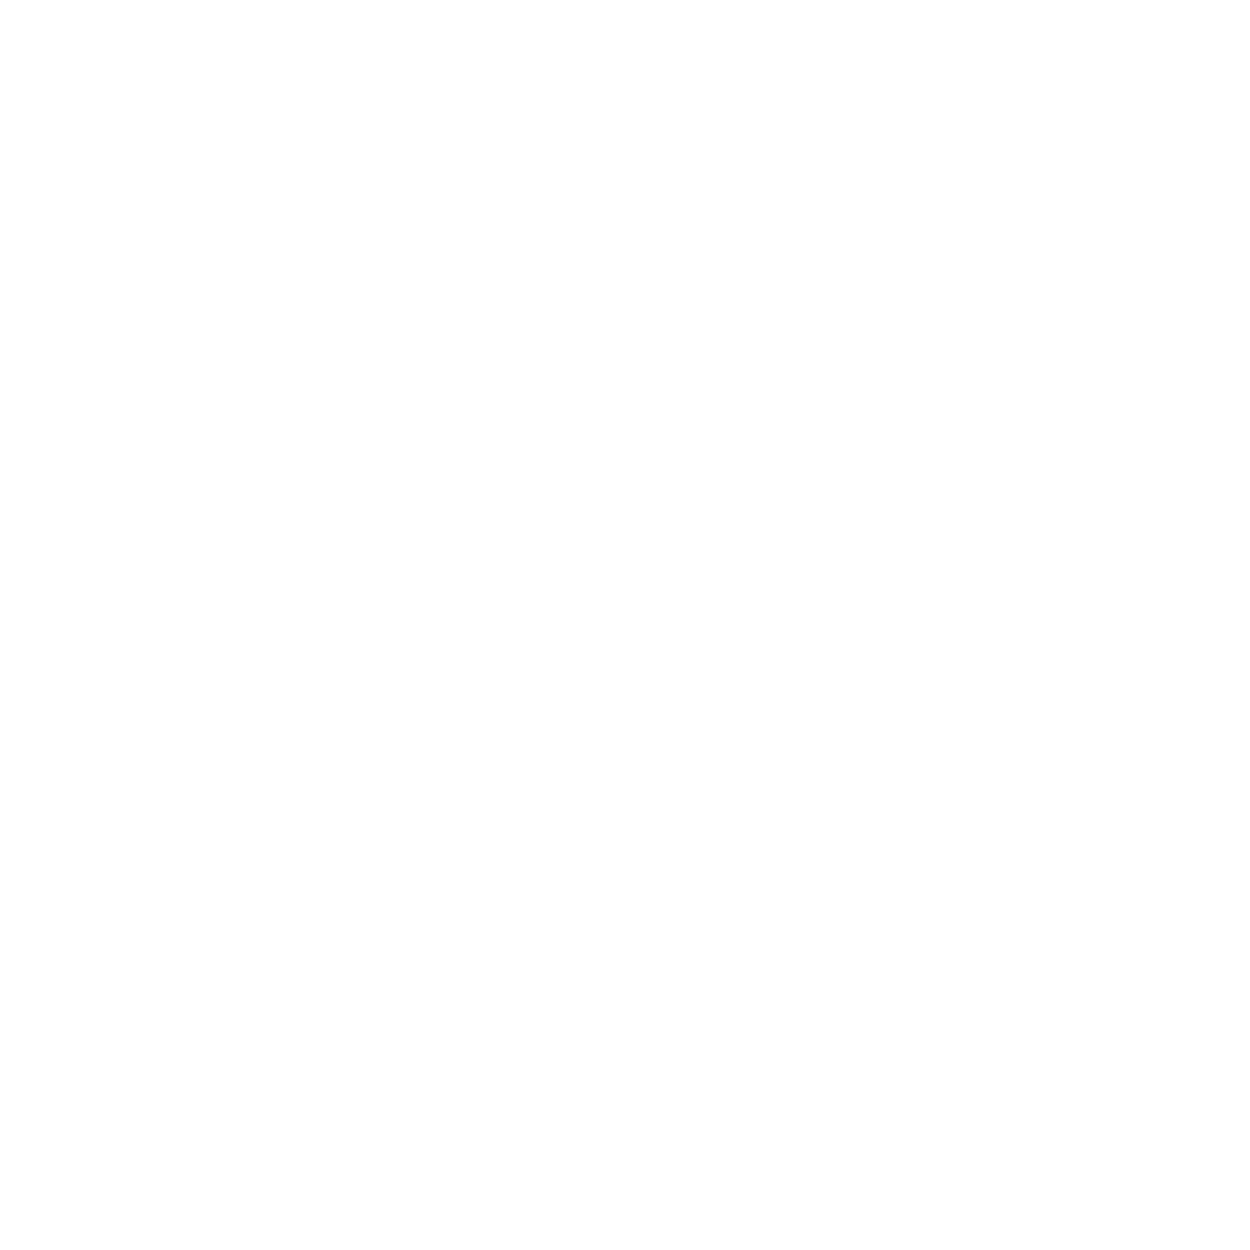 Priority Six